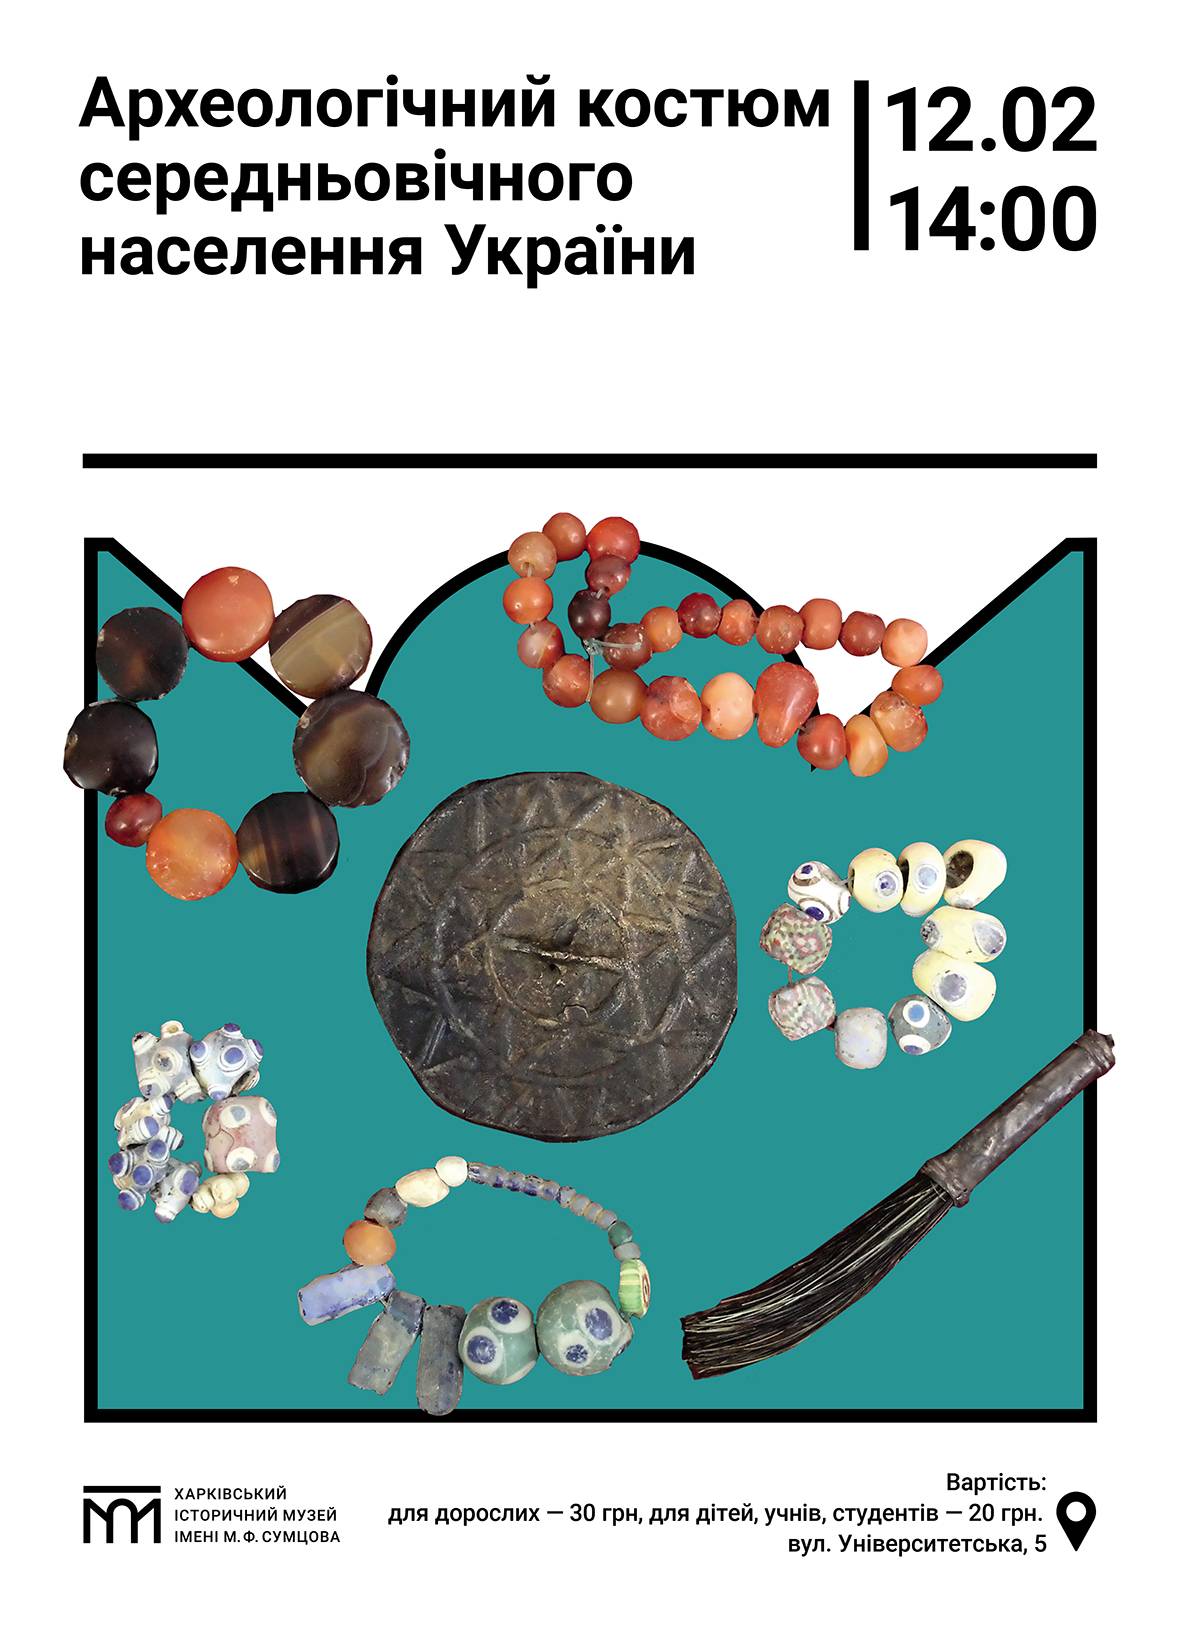 Археологічний костюм середньовічного населення України